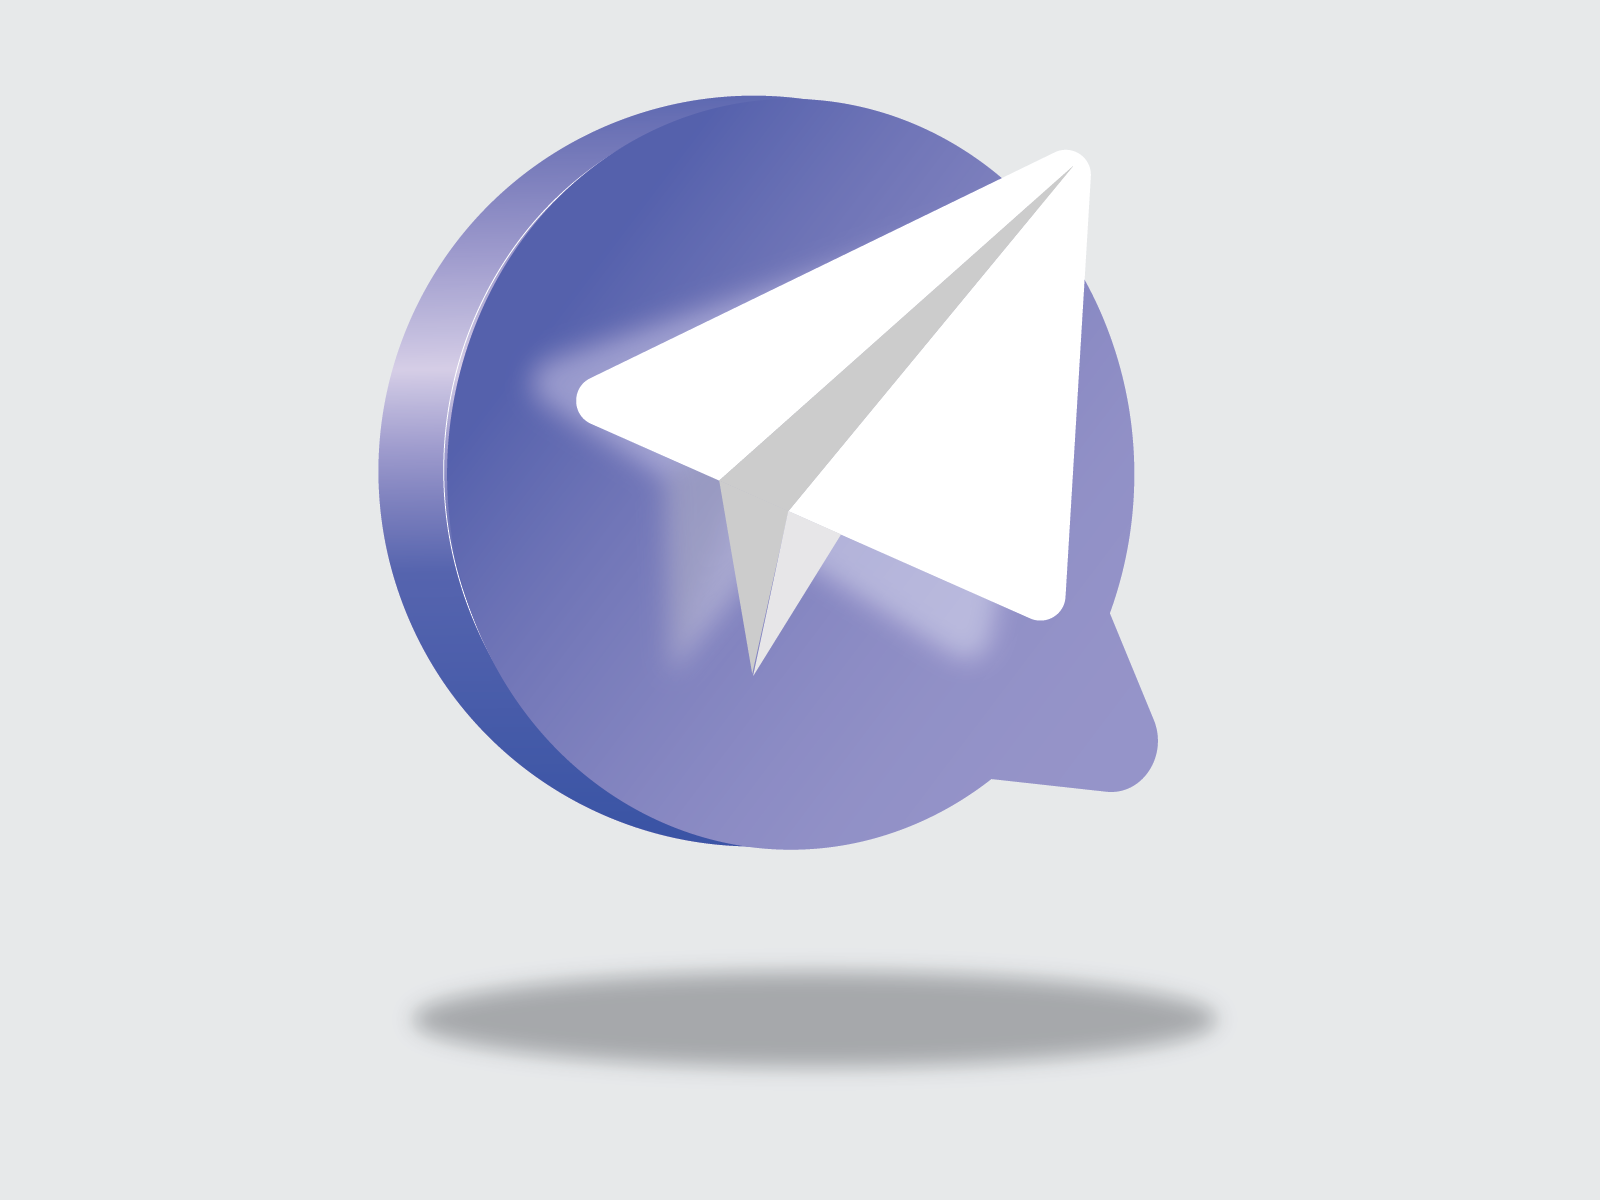 Telegram curl. Логотип телеграмм. Пиктограмма телеграмм. Телеграм значок 3d. Телега логотип.